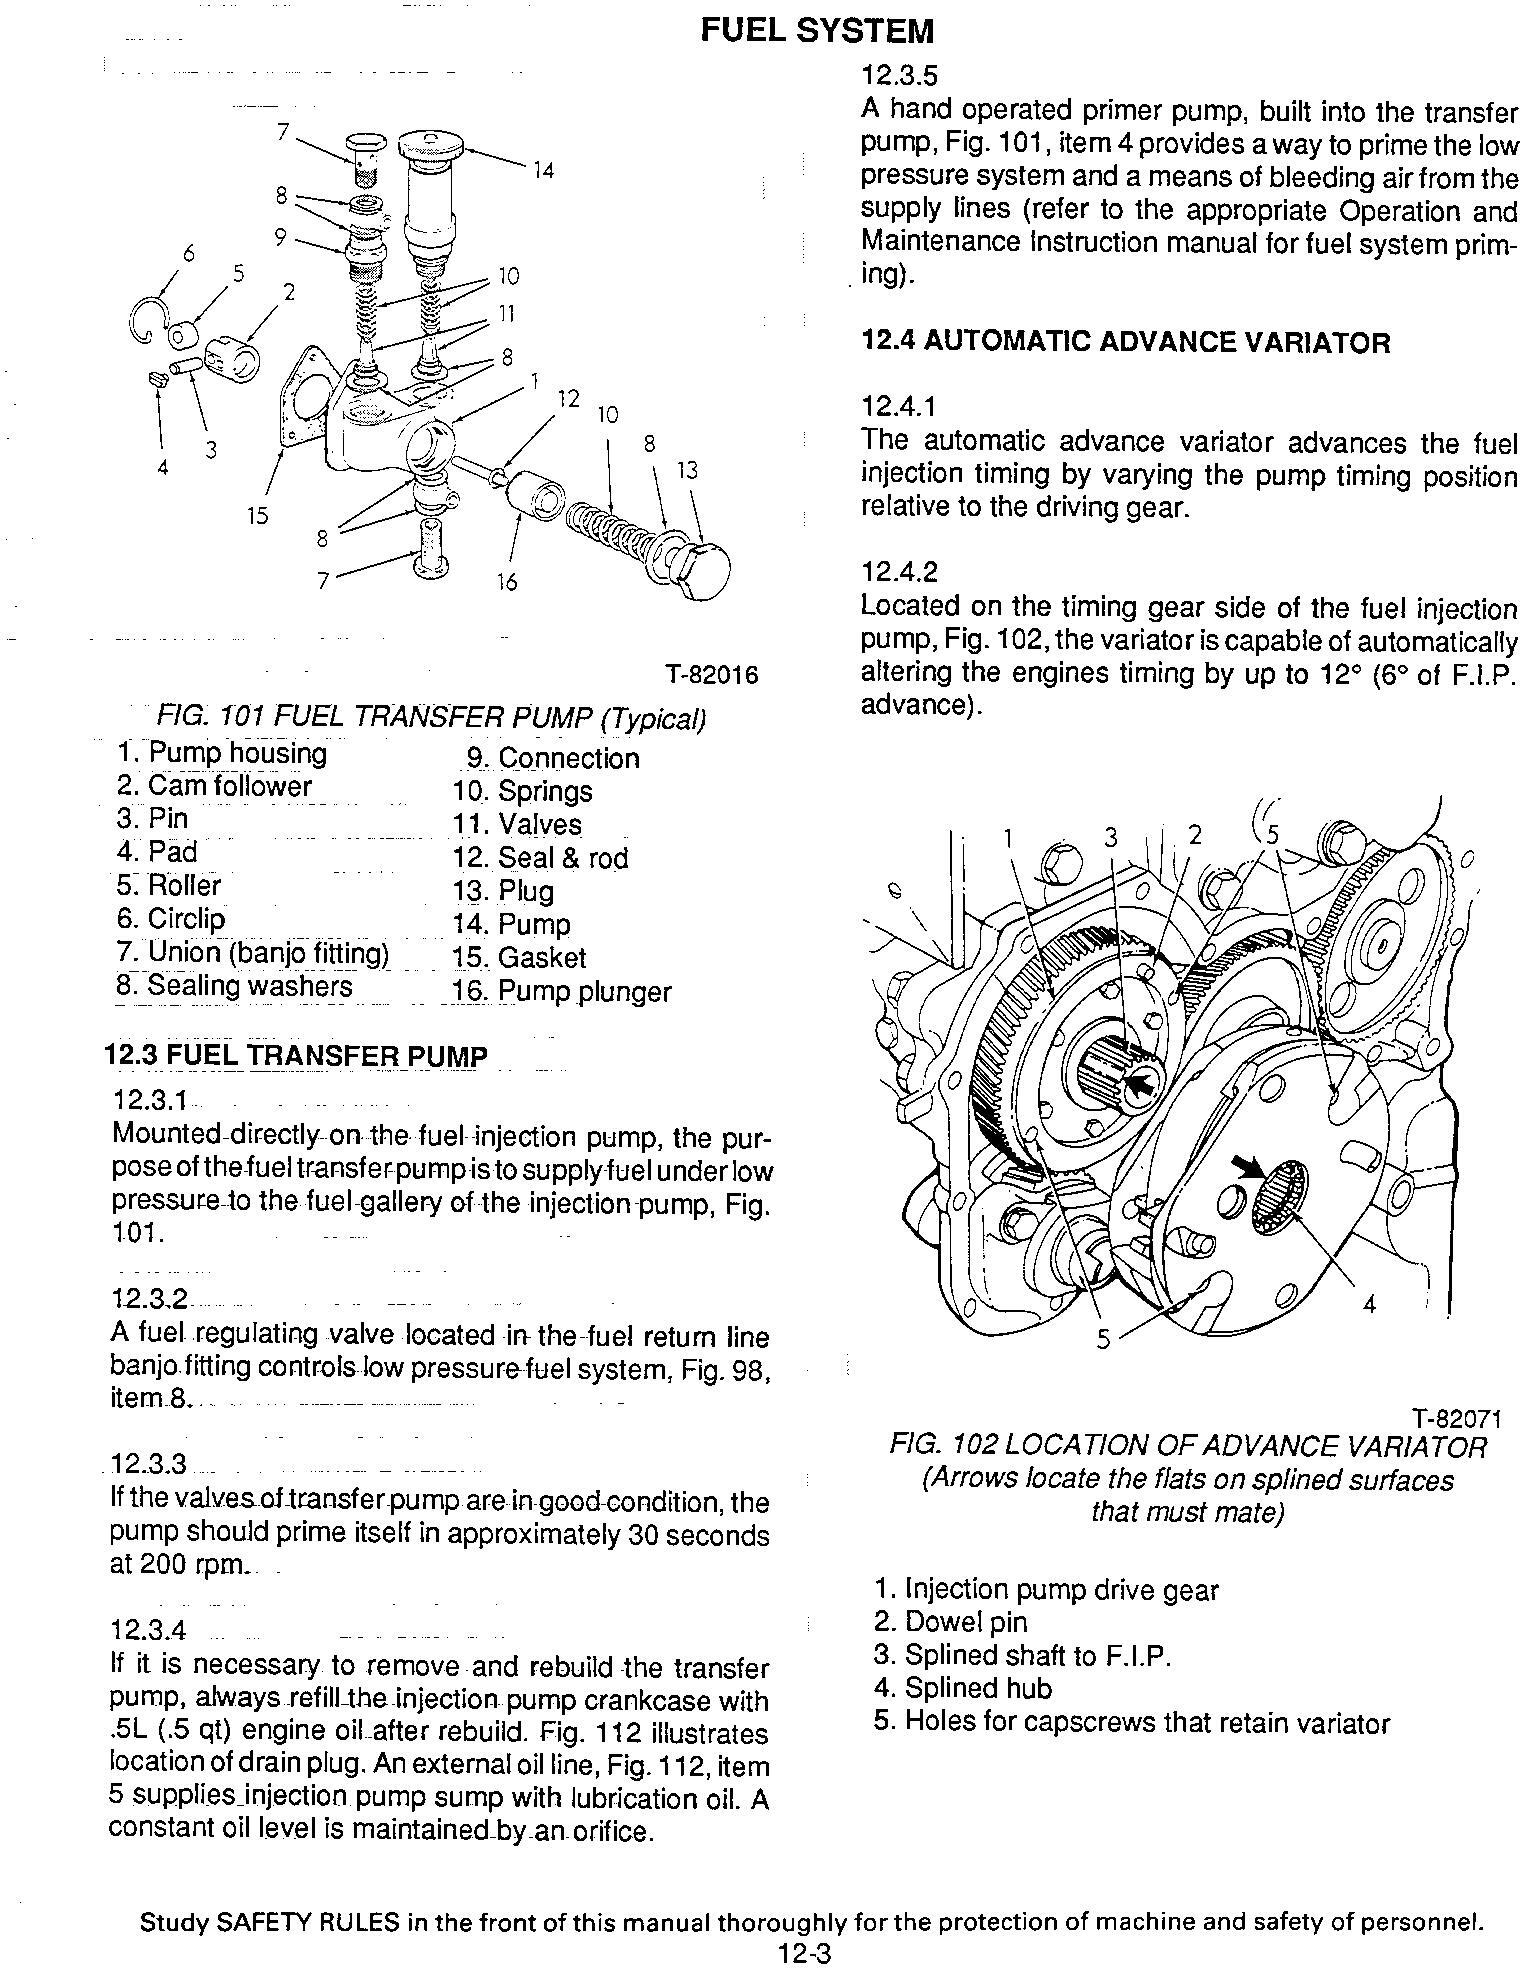 Fiat-Allis FR11 Wheel Loader Service Manual - 1